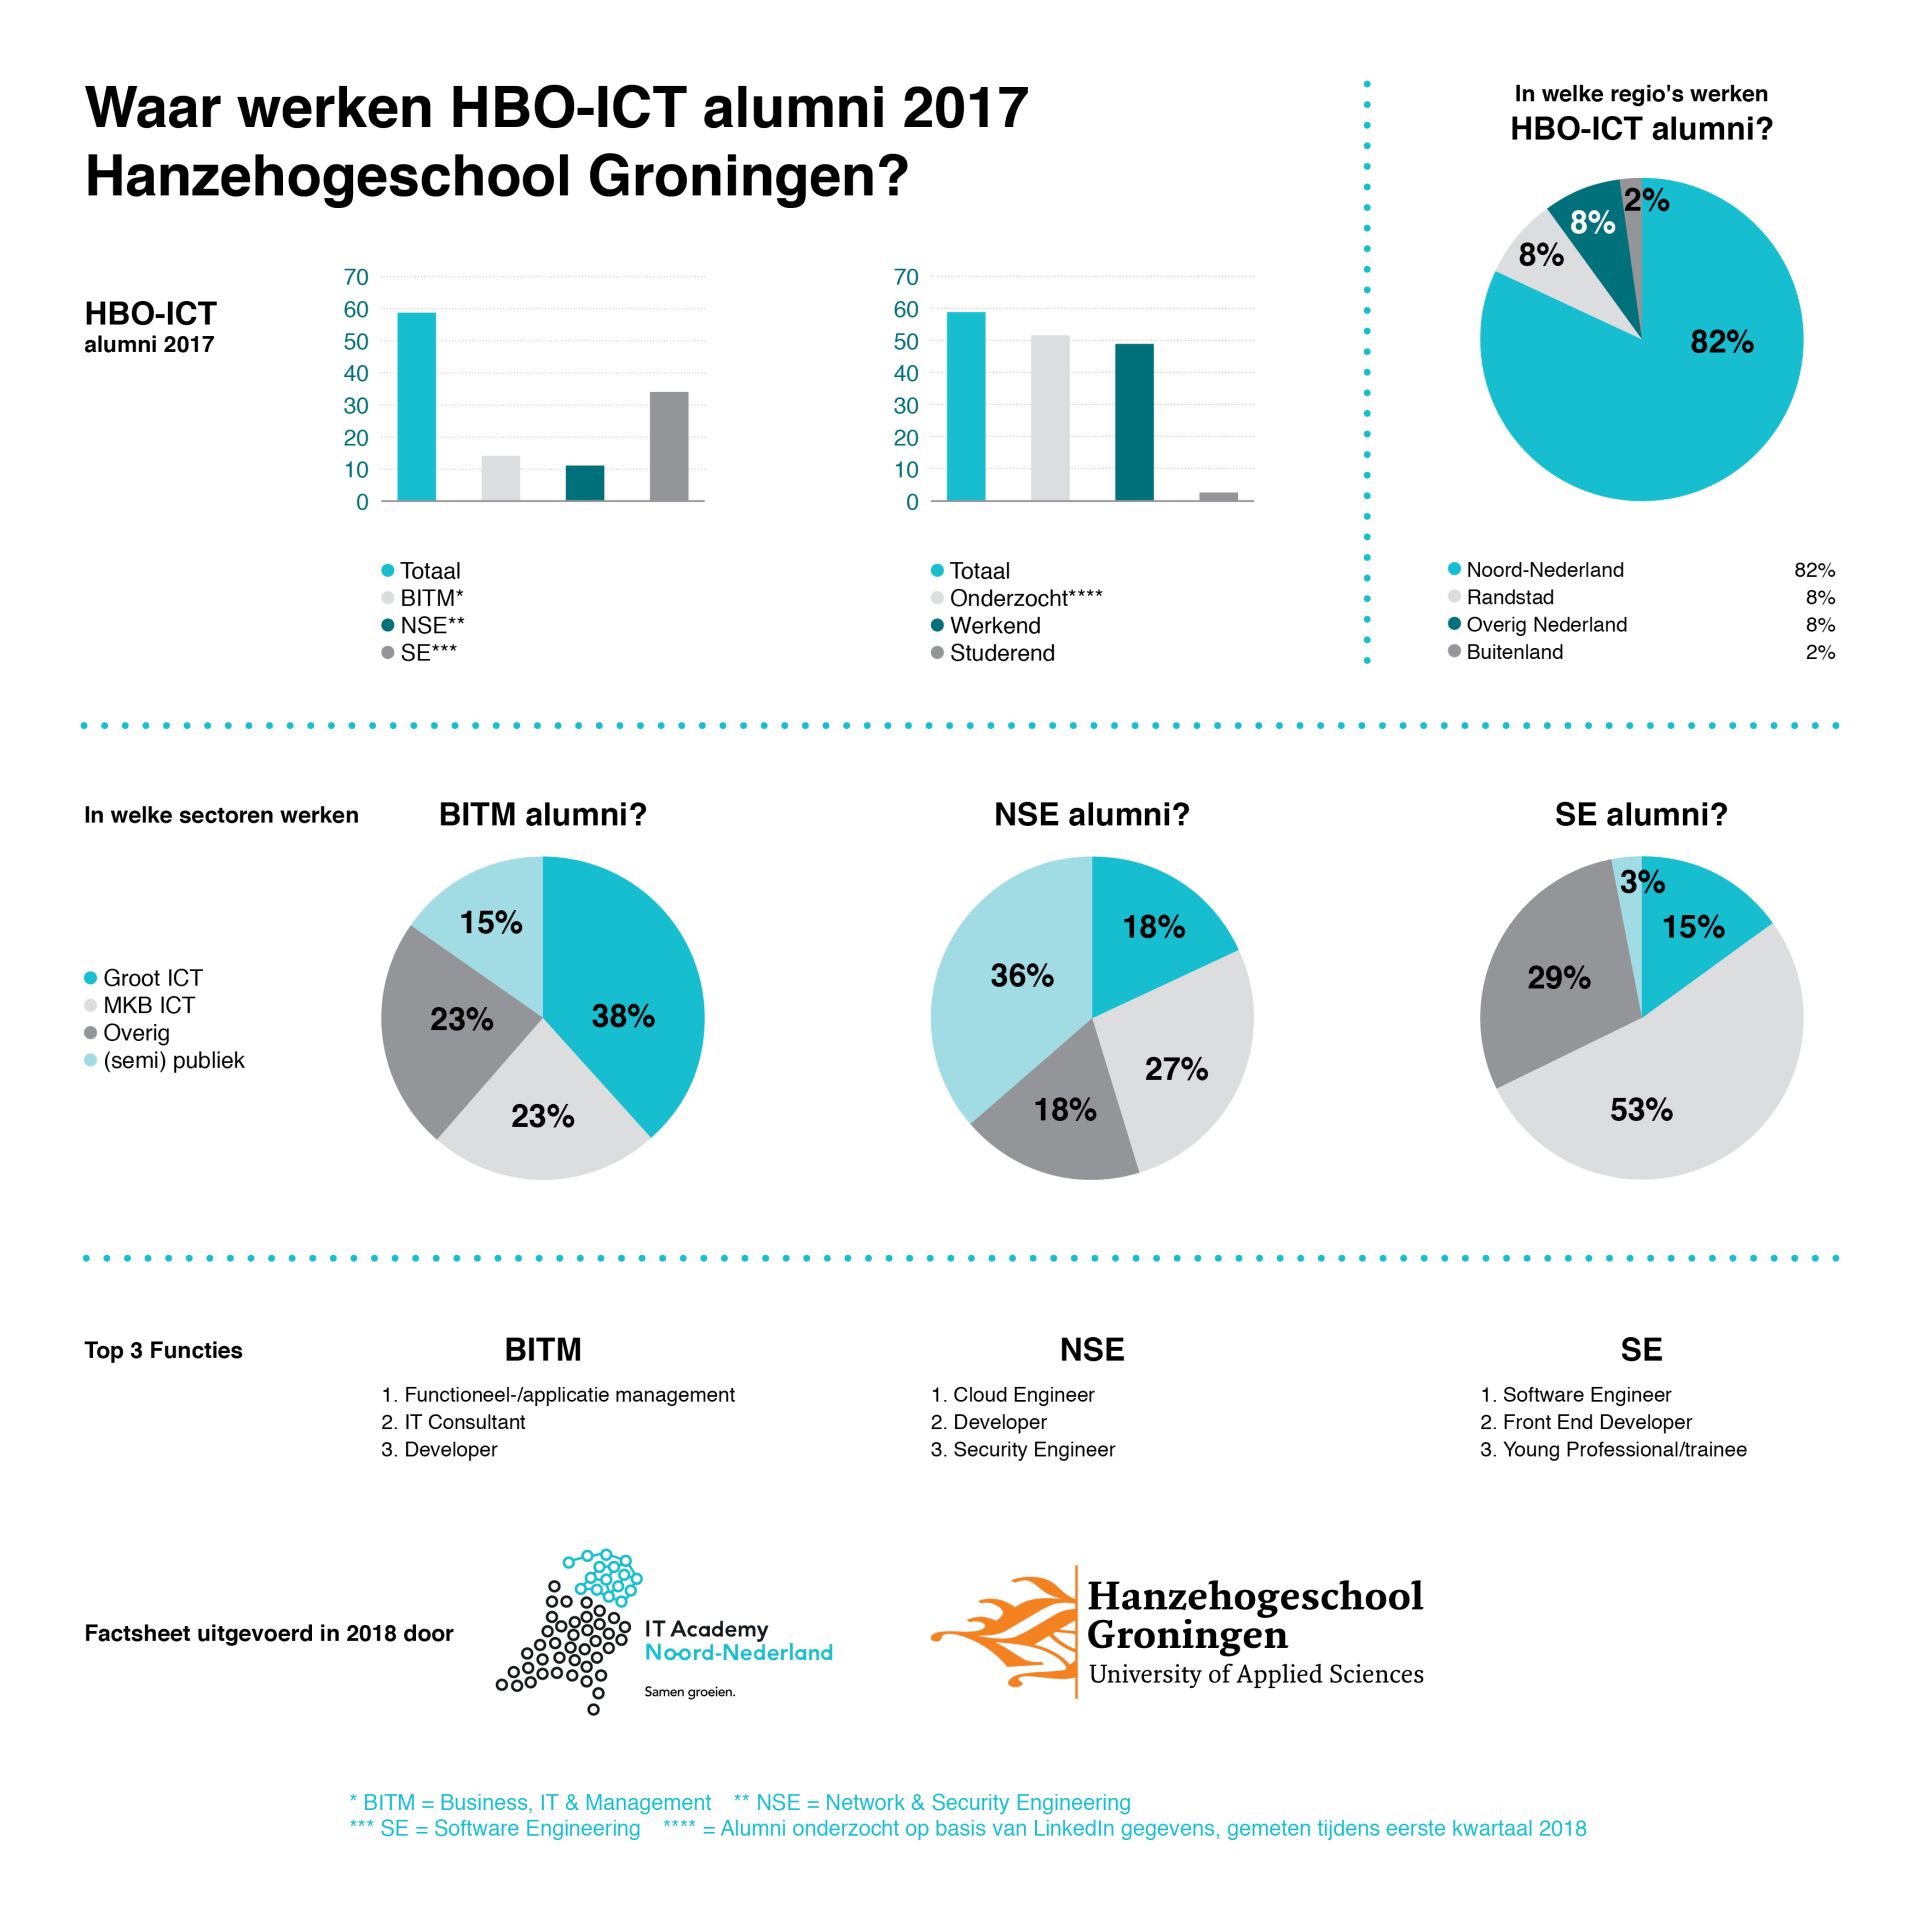 Waar werken HBO-ICT alumni 2017 Hanzehogeschool Groningen?